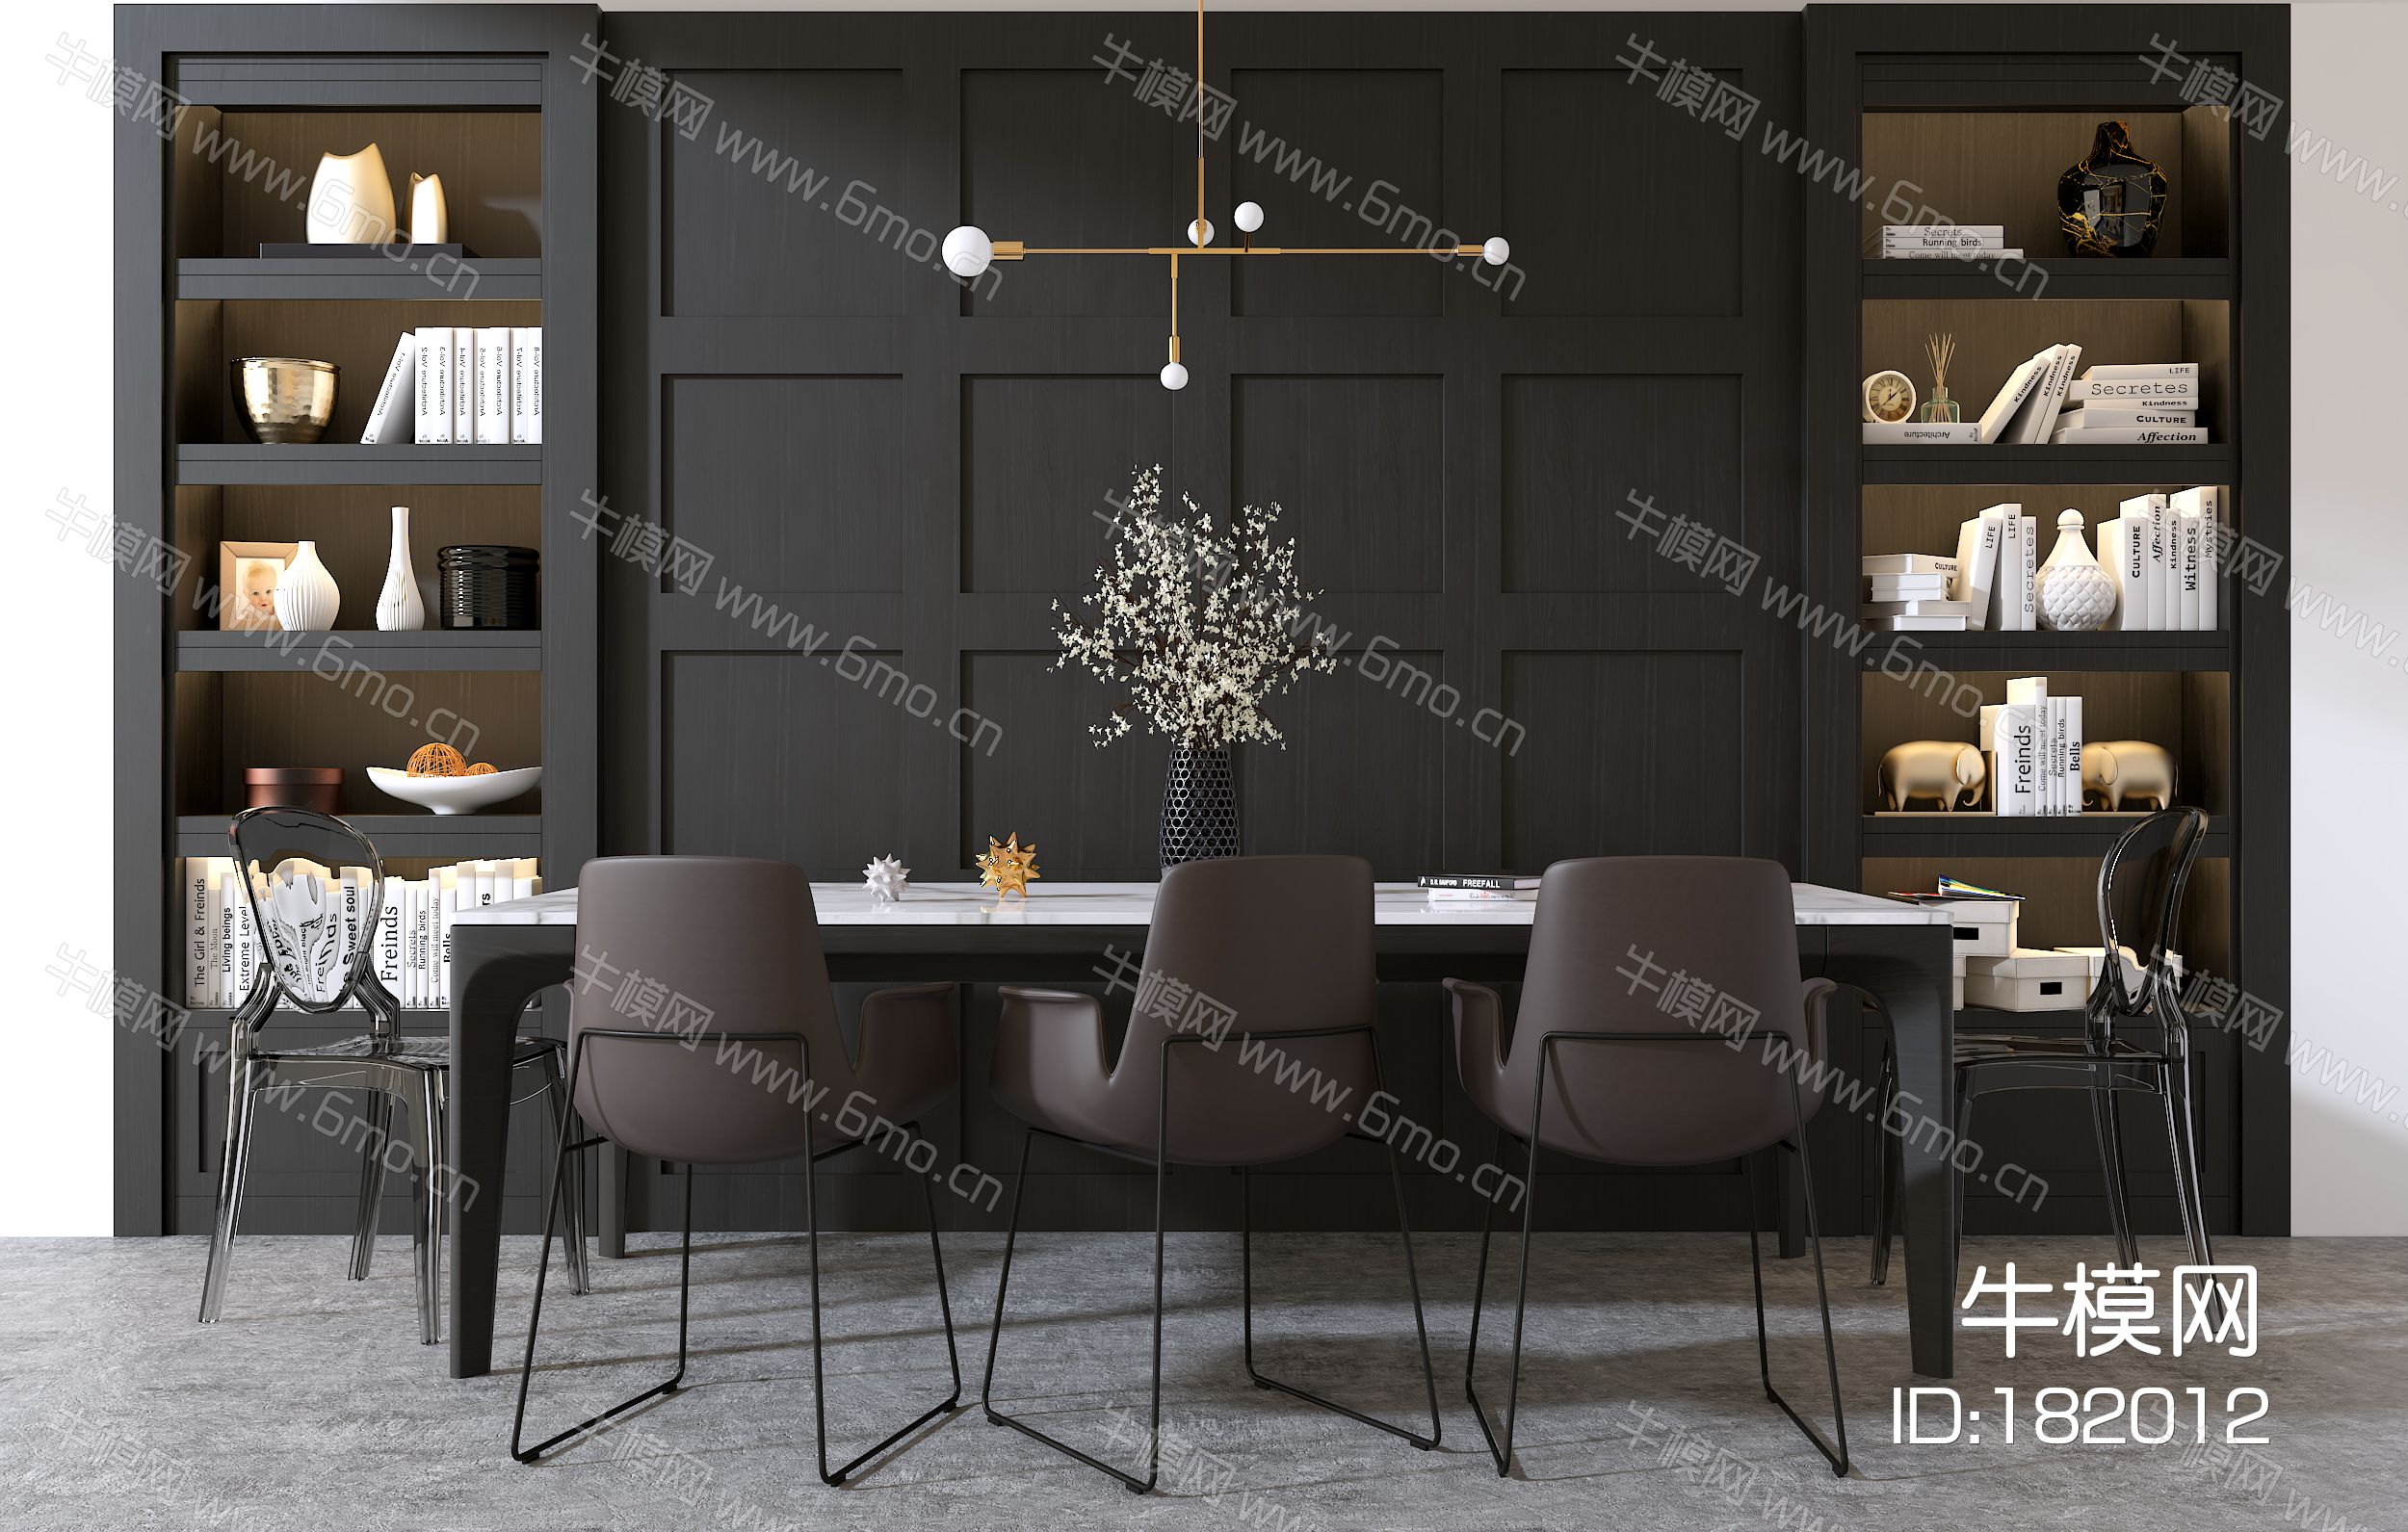 现代餐厅餐桌 椅子 陈设品 吊灯组合